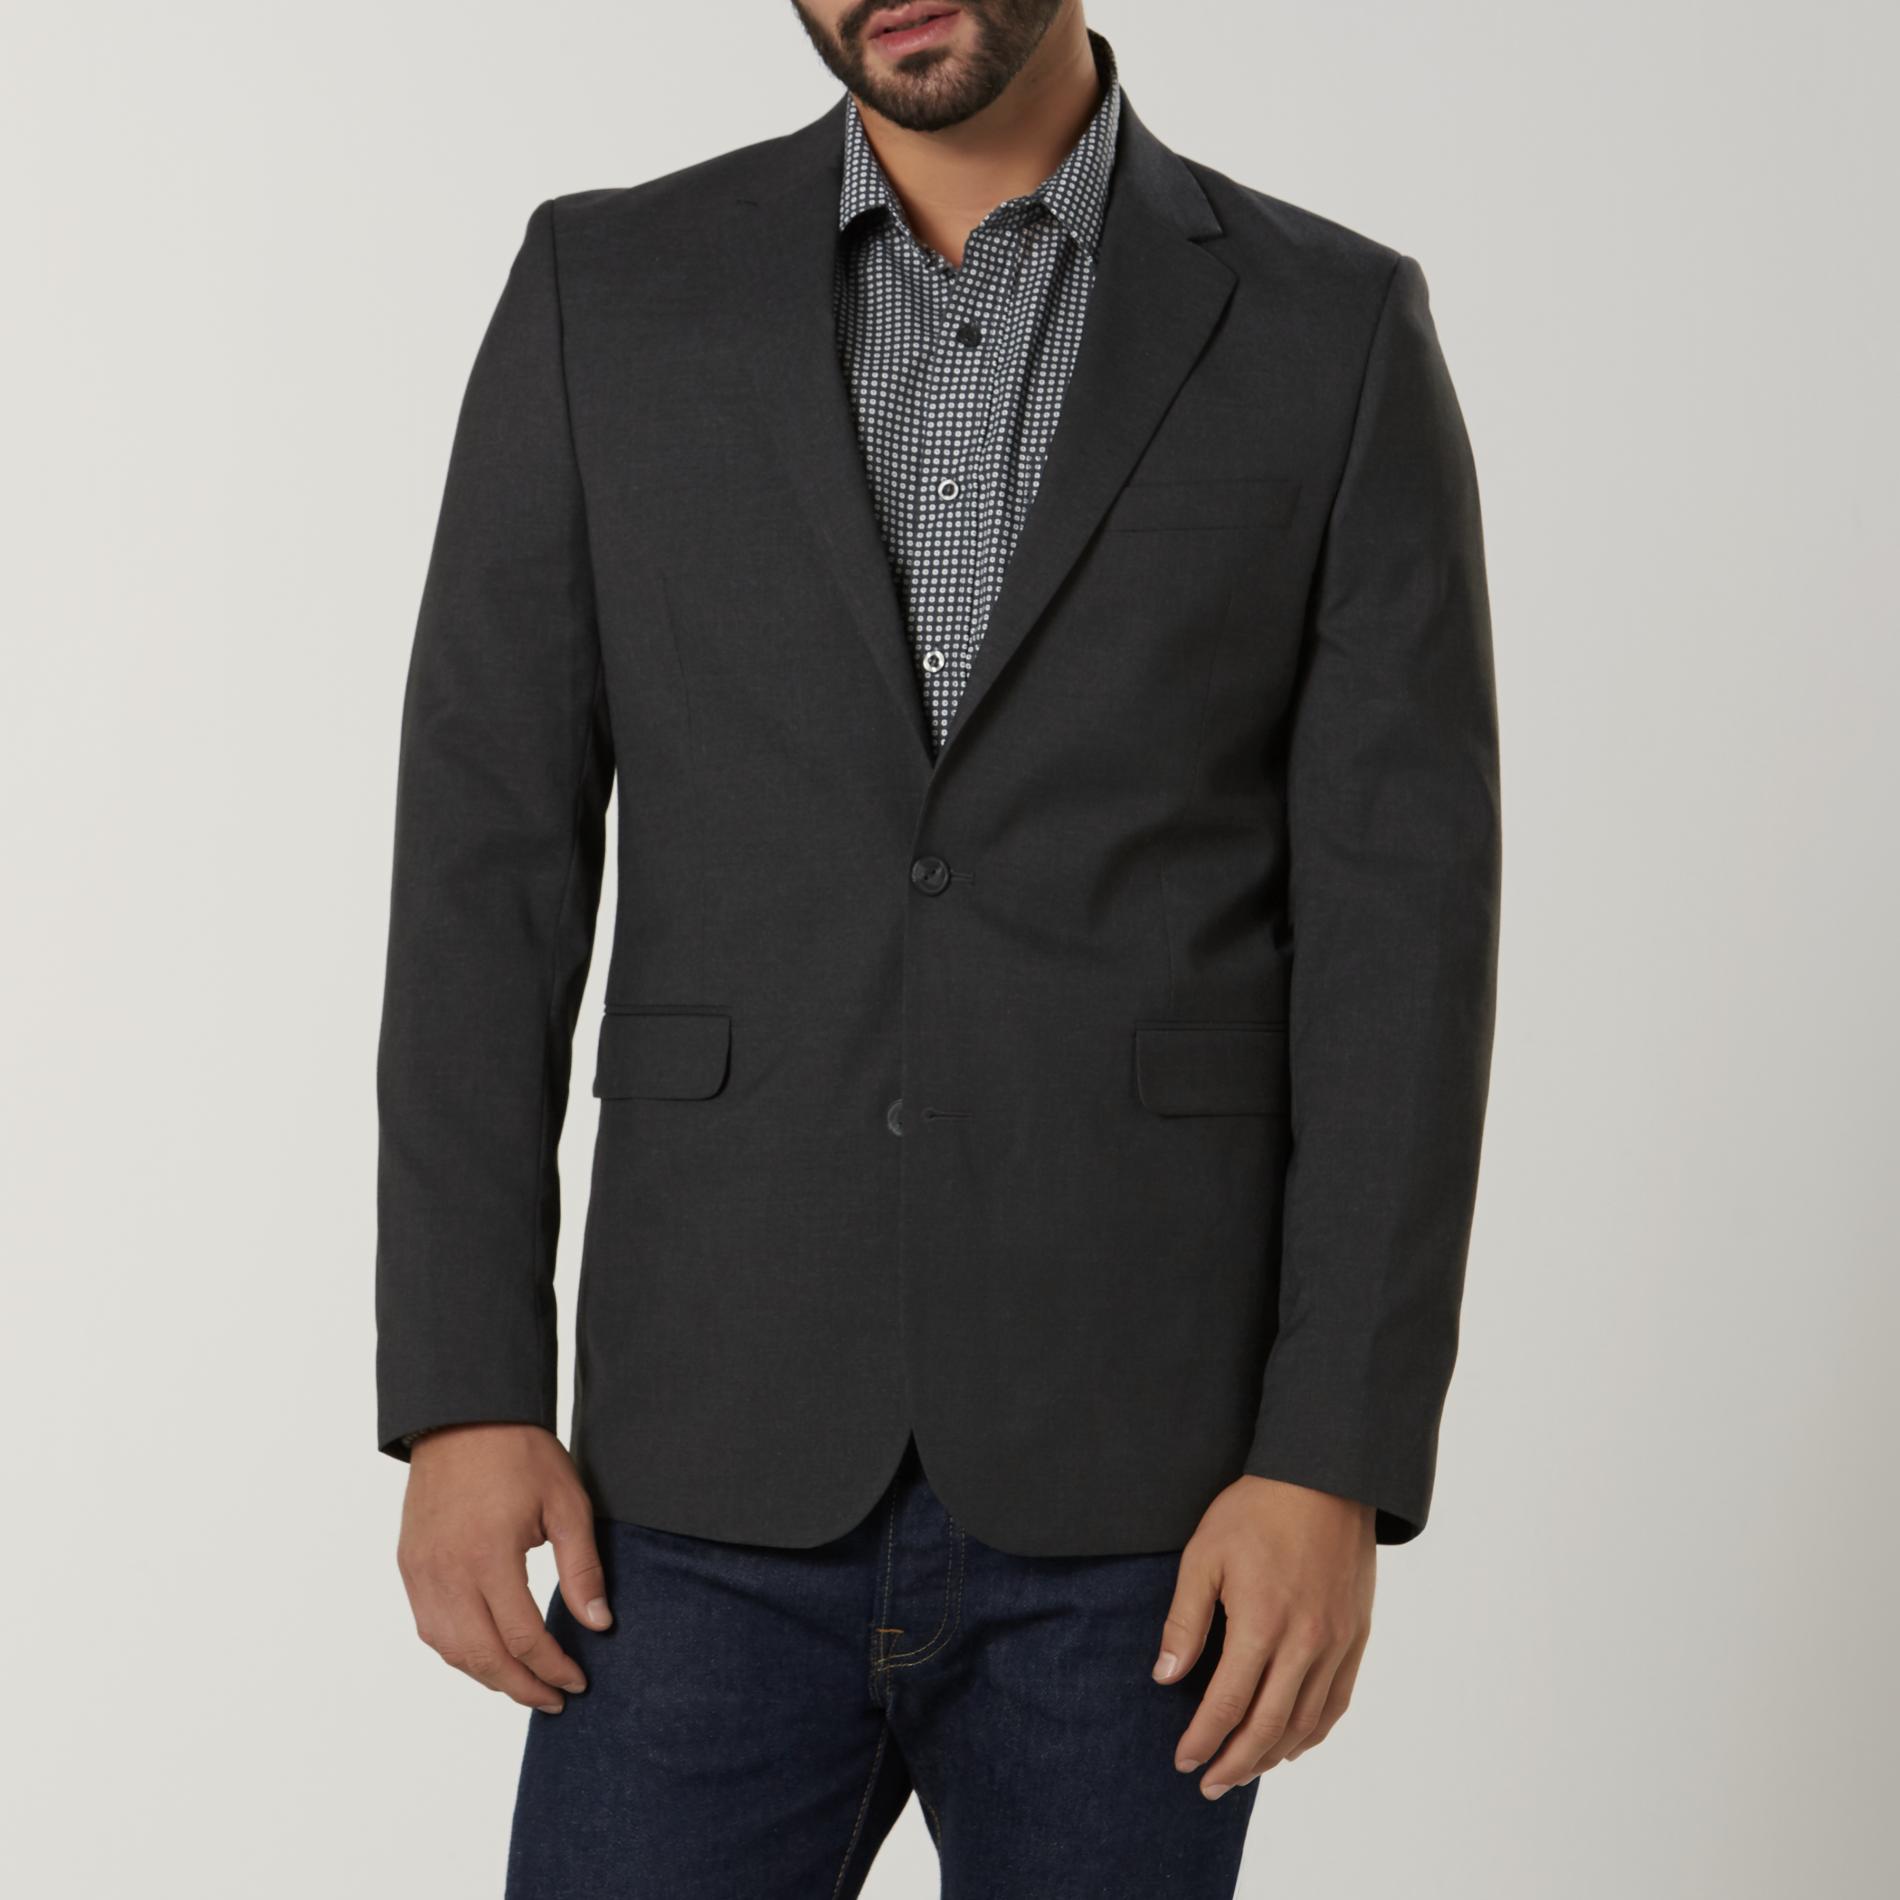 Structure Men's Modern Fit Suit Jacket